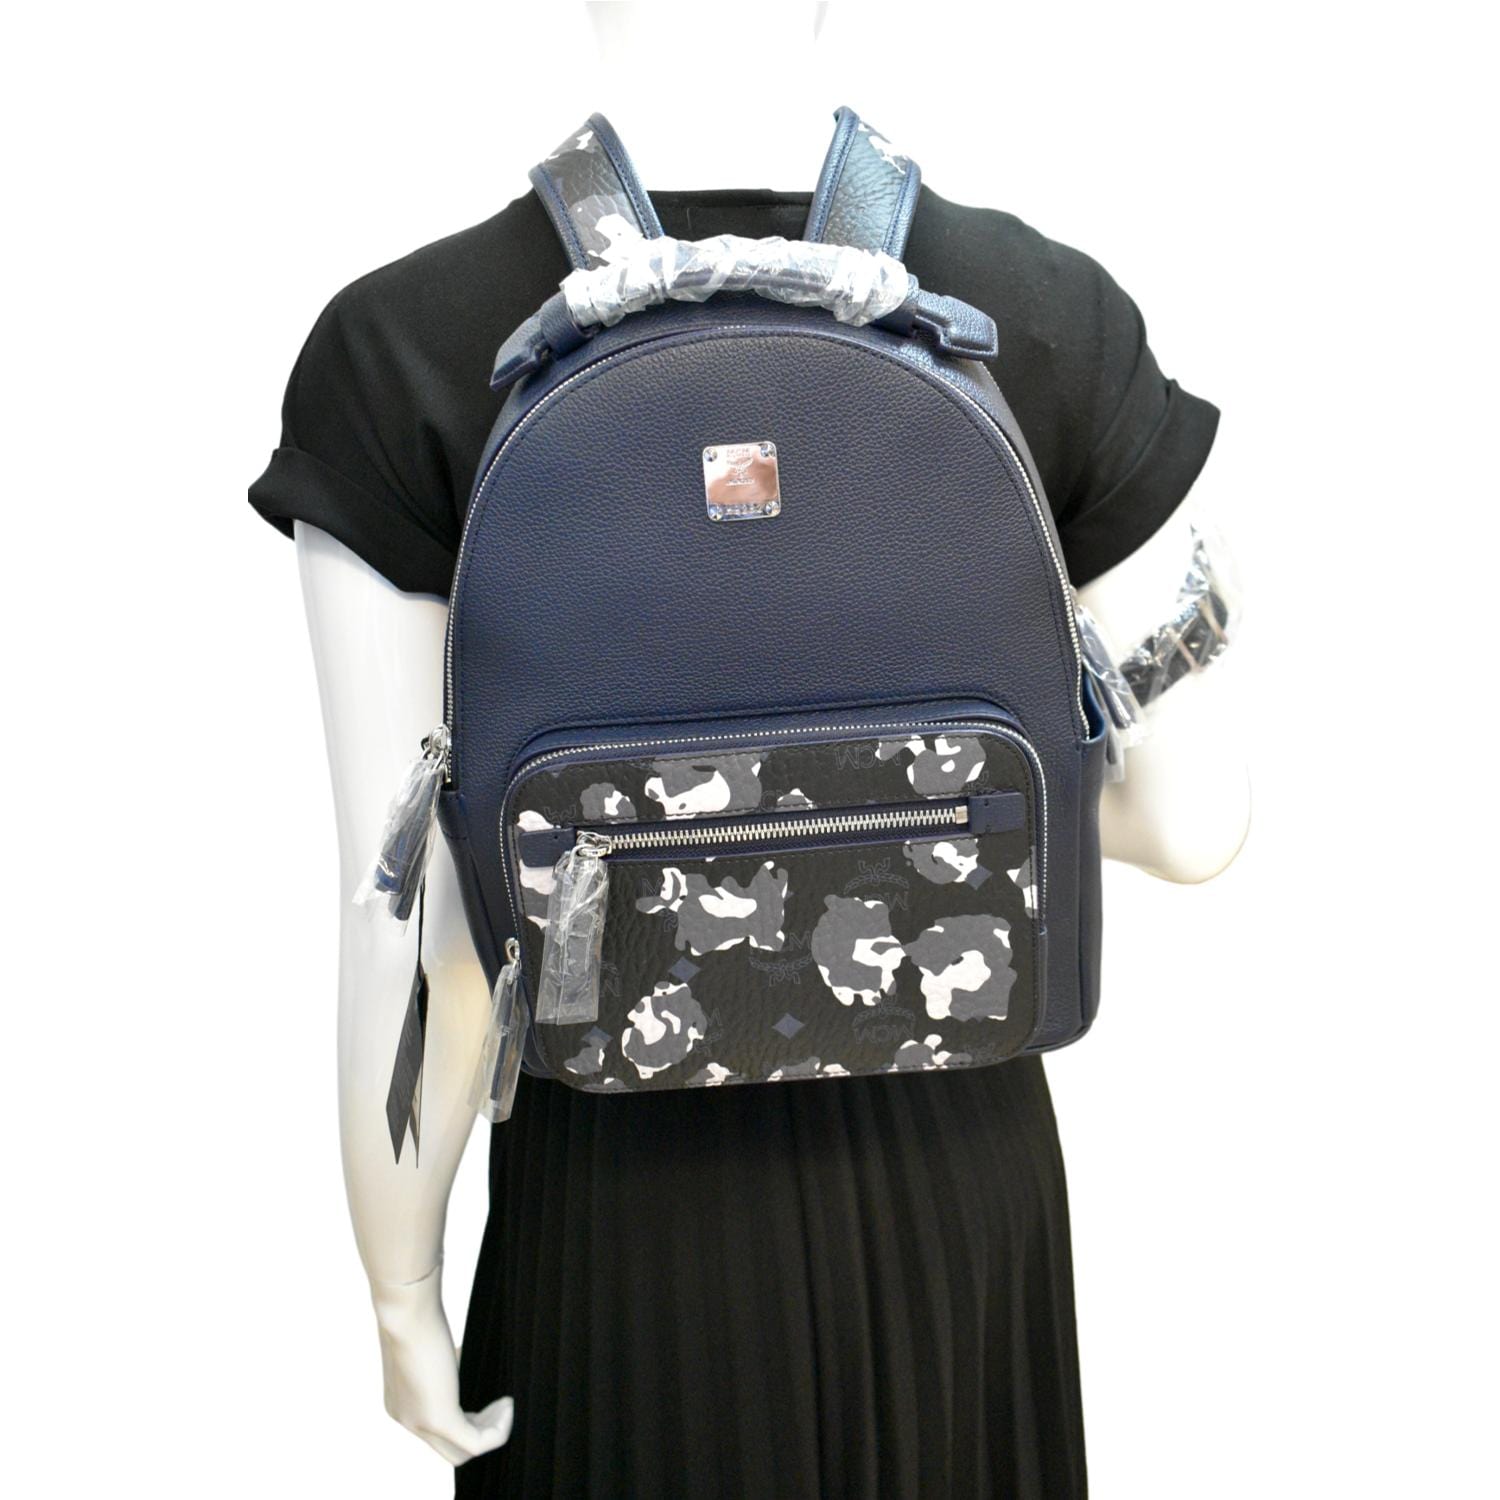 MCM New Camo Stark Floral Visetos Backpack Bag Navy Blue